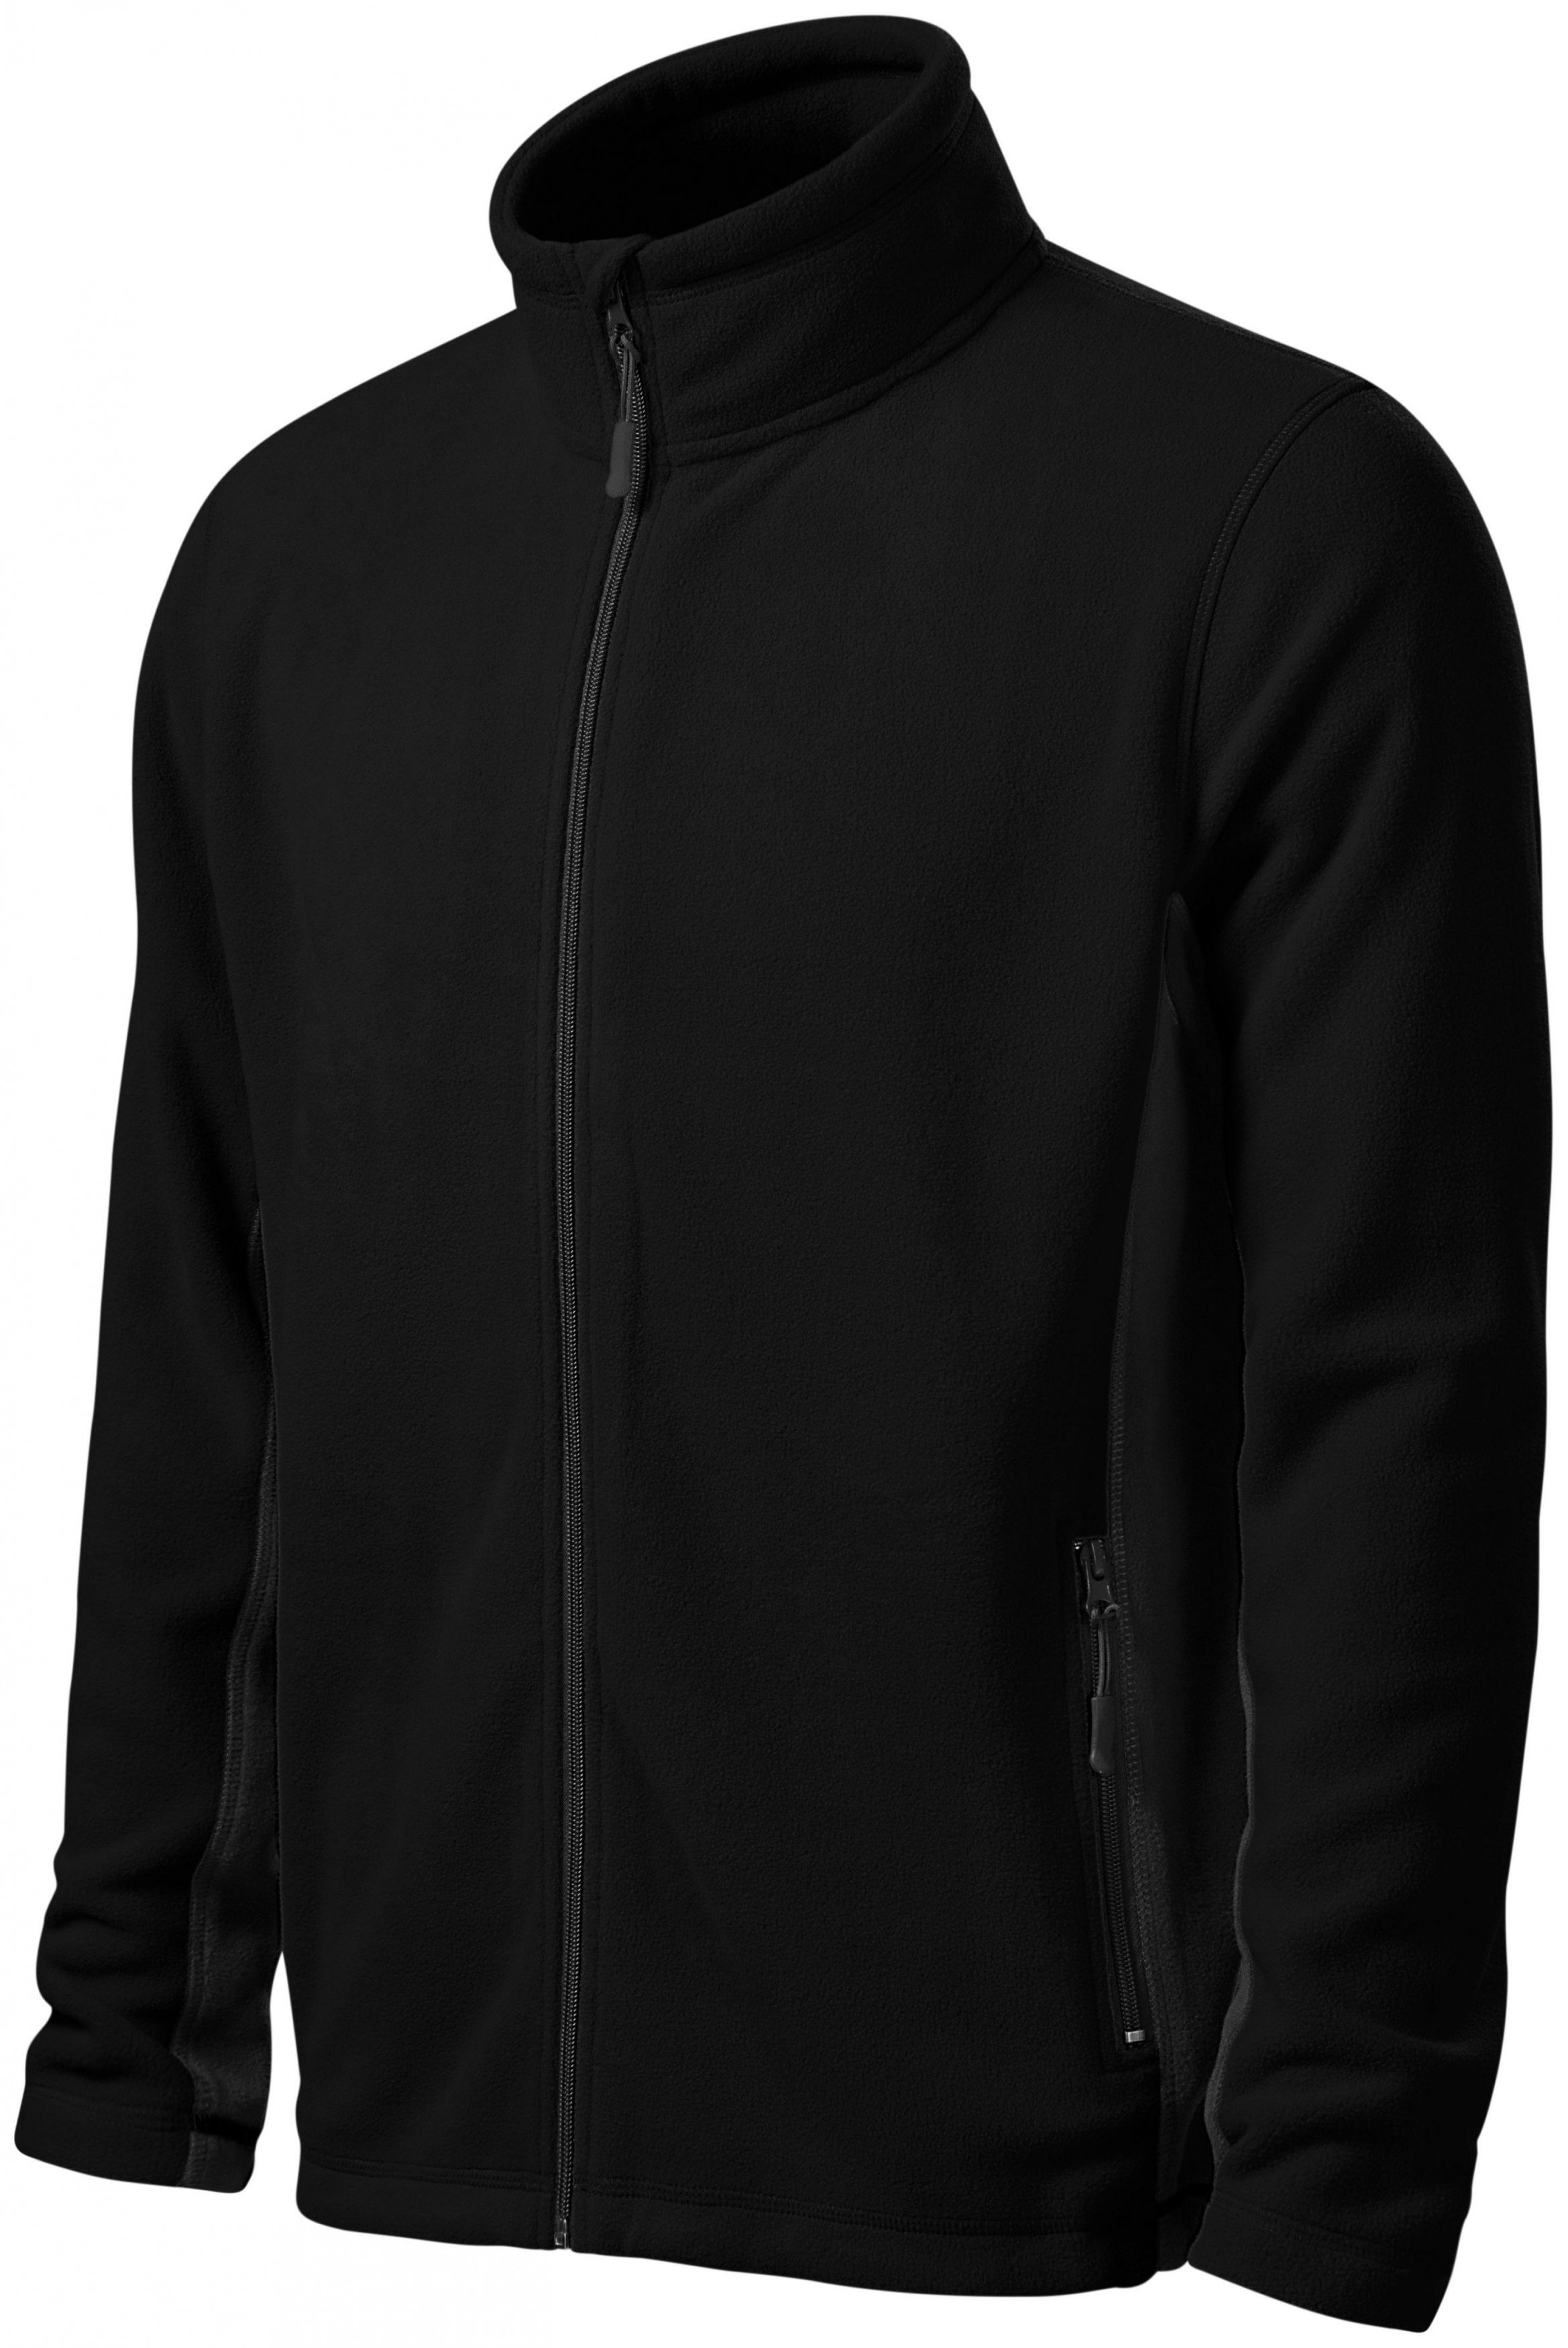 Pánska fleecová bunda kontrastná, čierna, 3XL